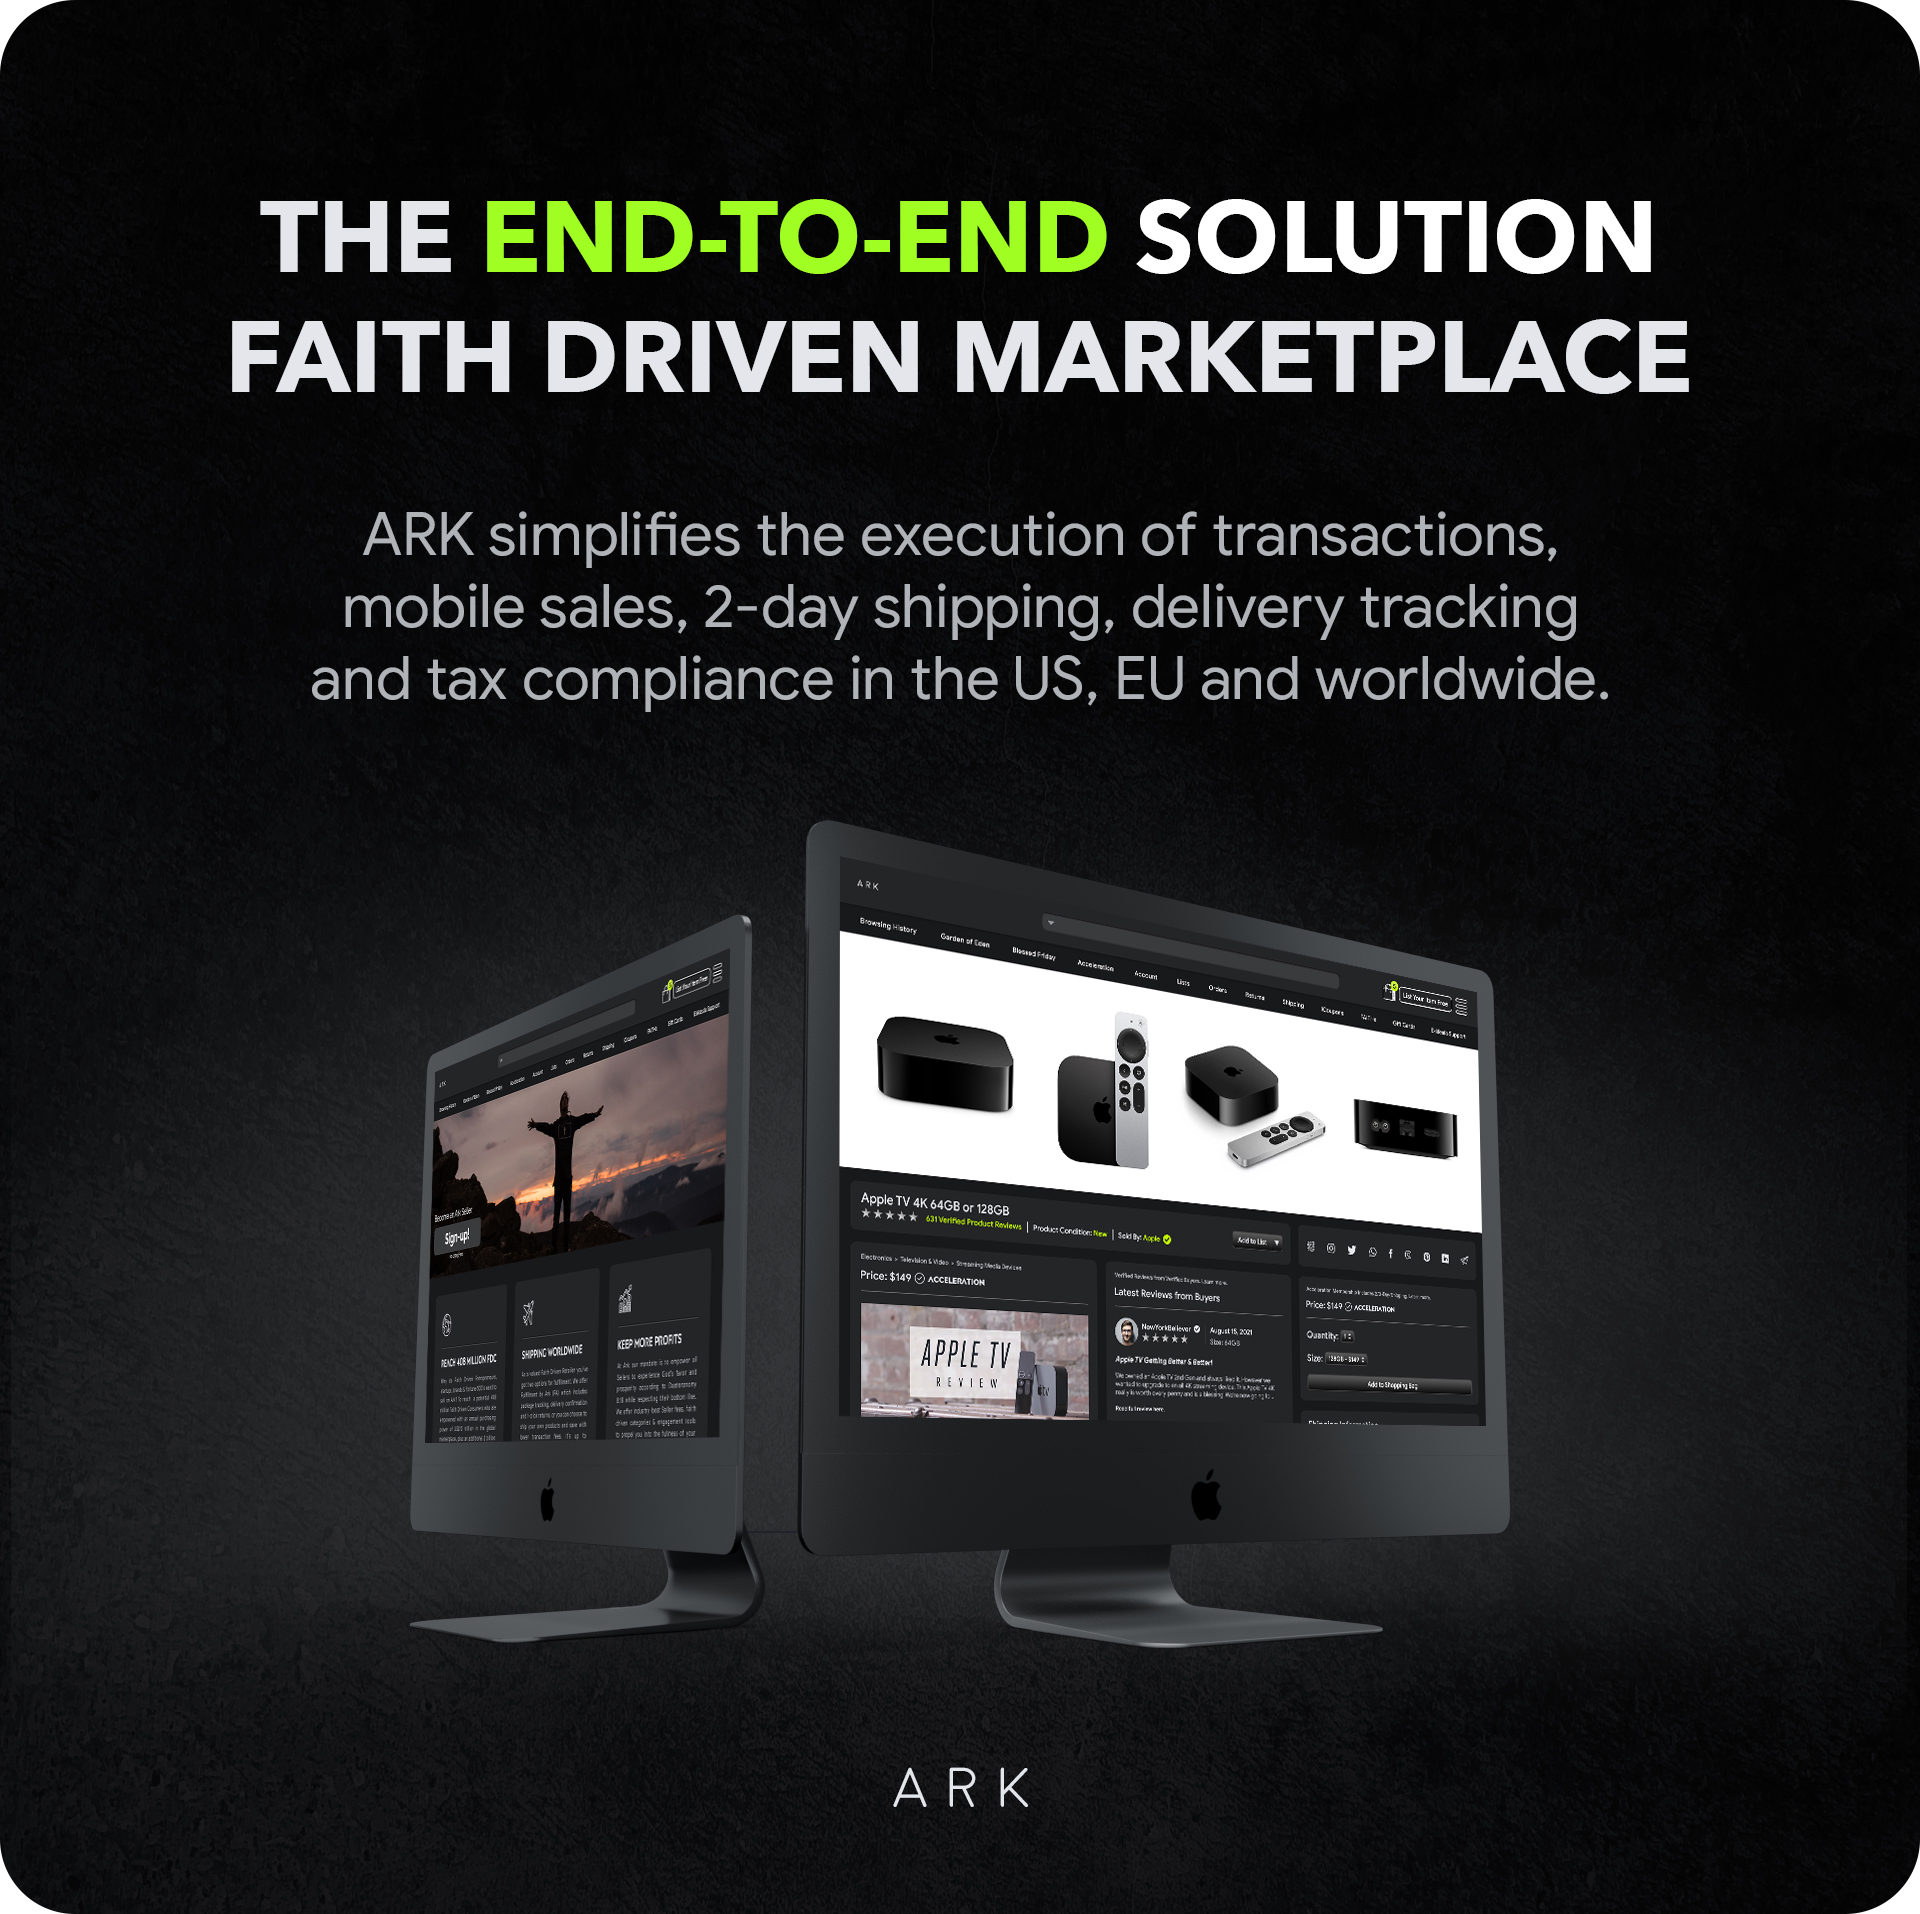 ARK - The Faith Driven Marketplace